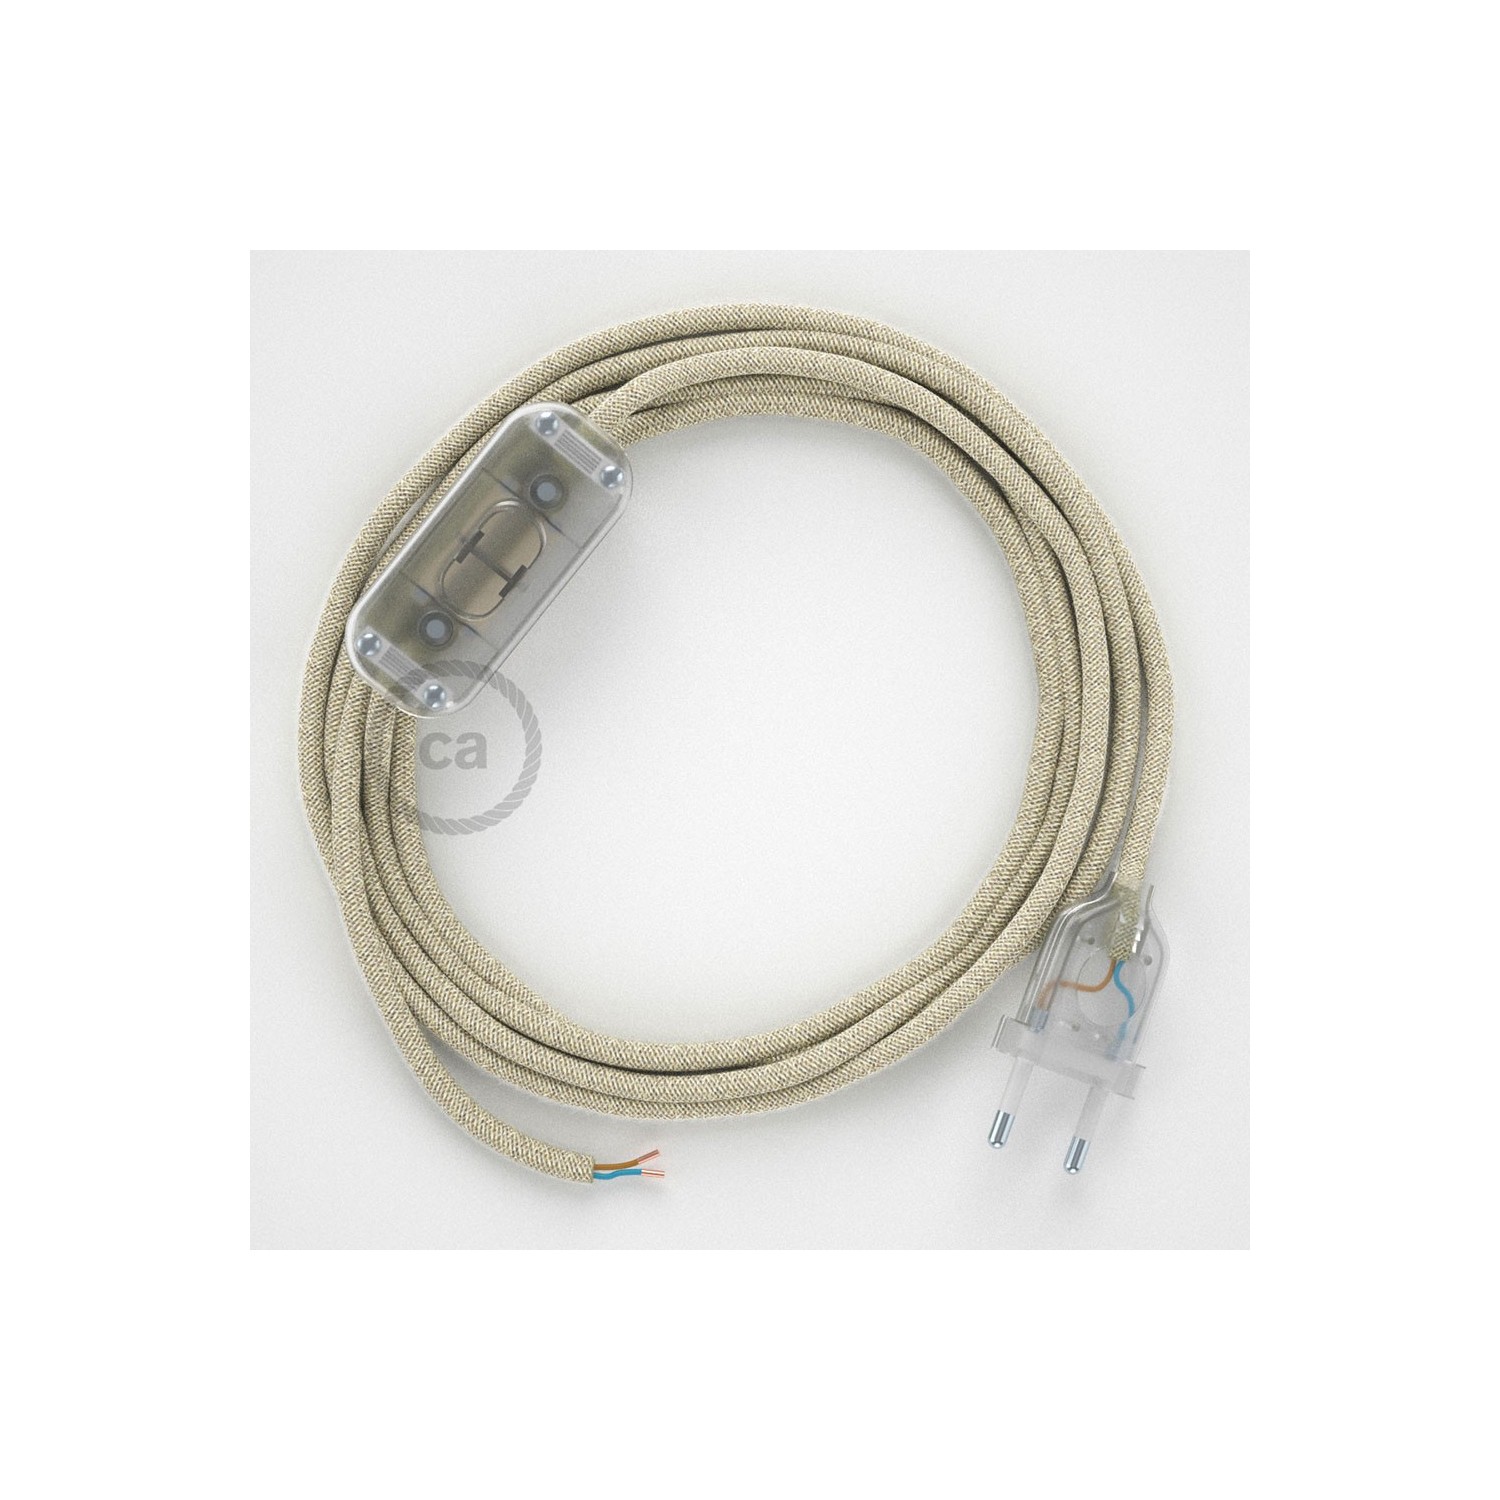 Cablaggio per lampada, cavo RN01 Lino Naturale Neutro 1,80 m. Scegli il colore dell'interruttore e della spina.